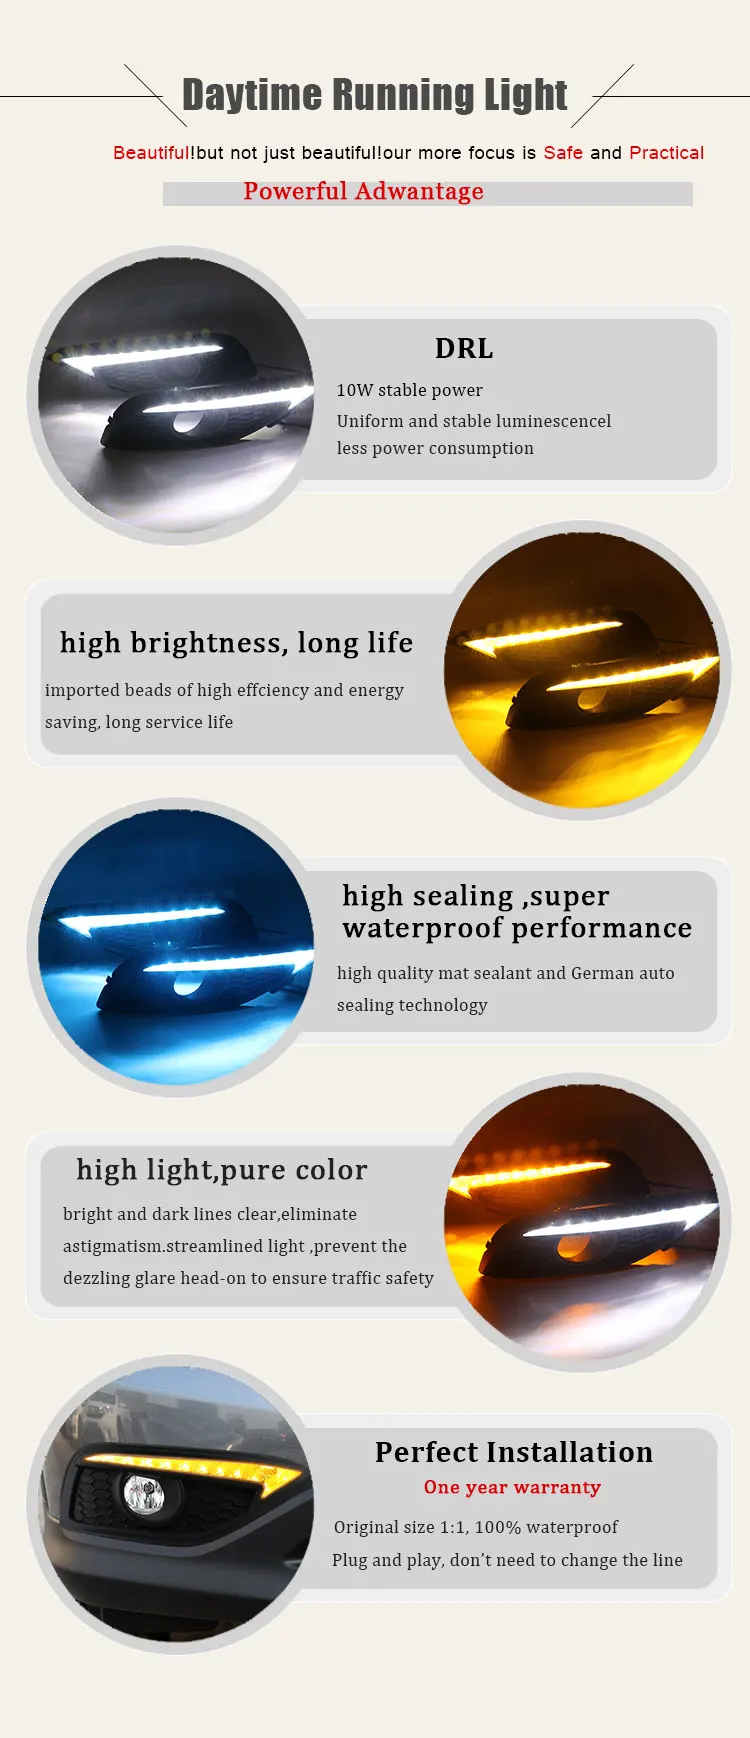 2 шт. автомобильный Стайлинг ультра яркий светодиодный дневные ходовые огни для Honda CRV 2012- водонепроницаемый автомобиль DRL светодиодный противотуманный фонарь